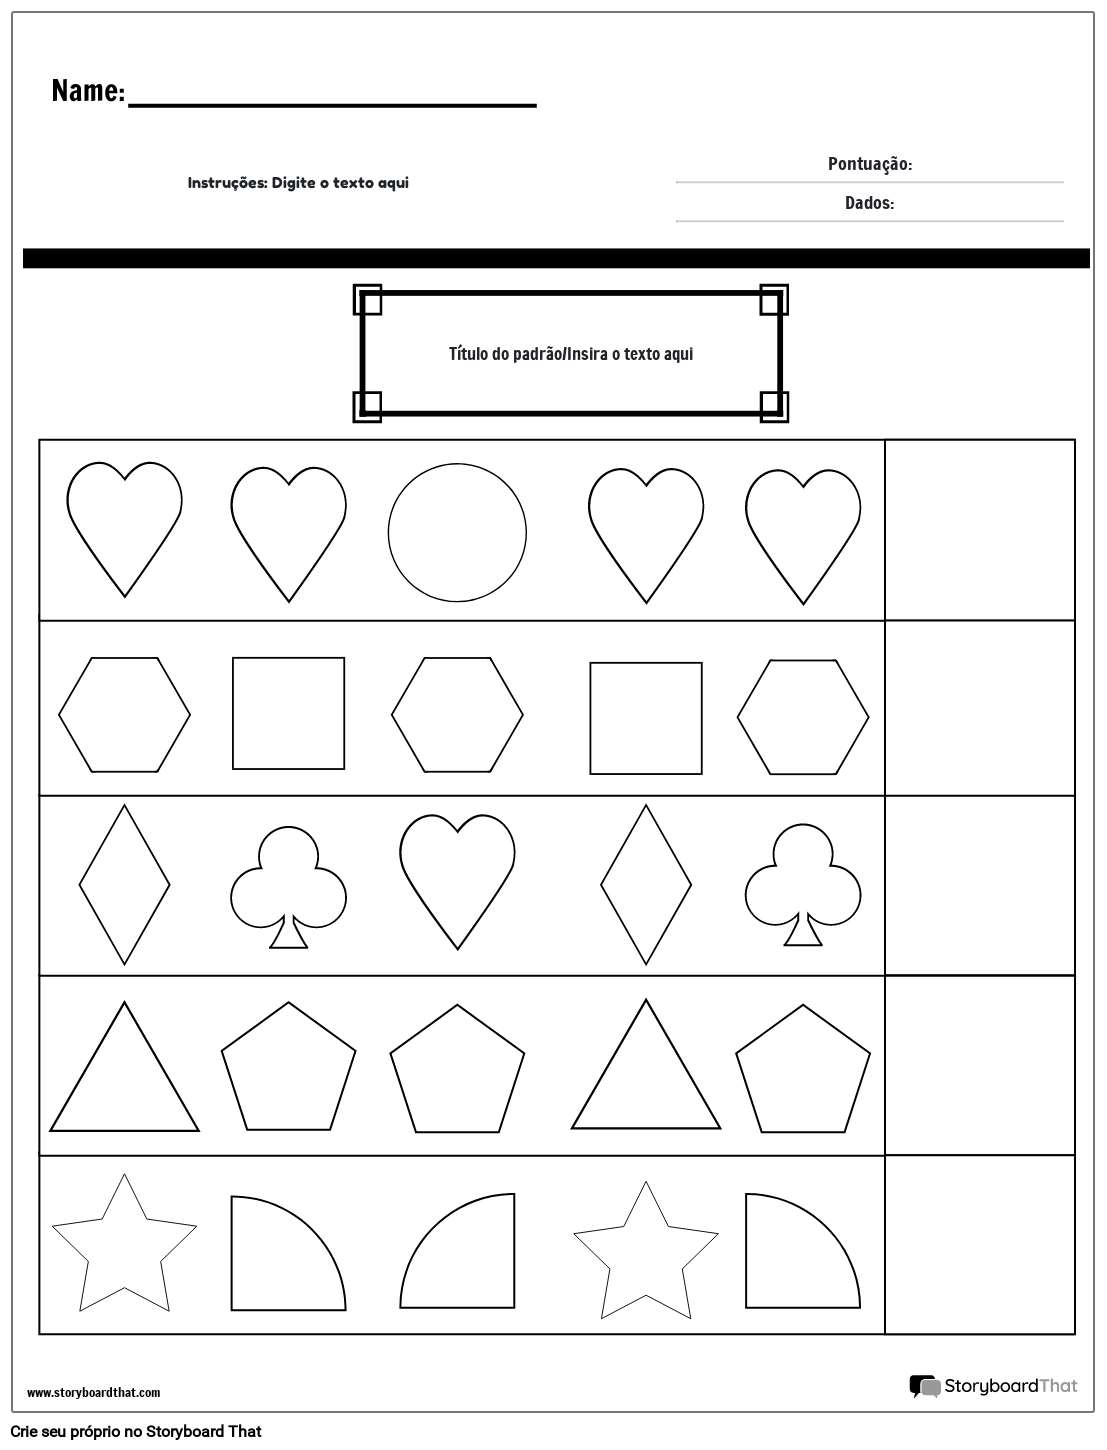 Planilha de padrão completo de formas (preto e branco)